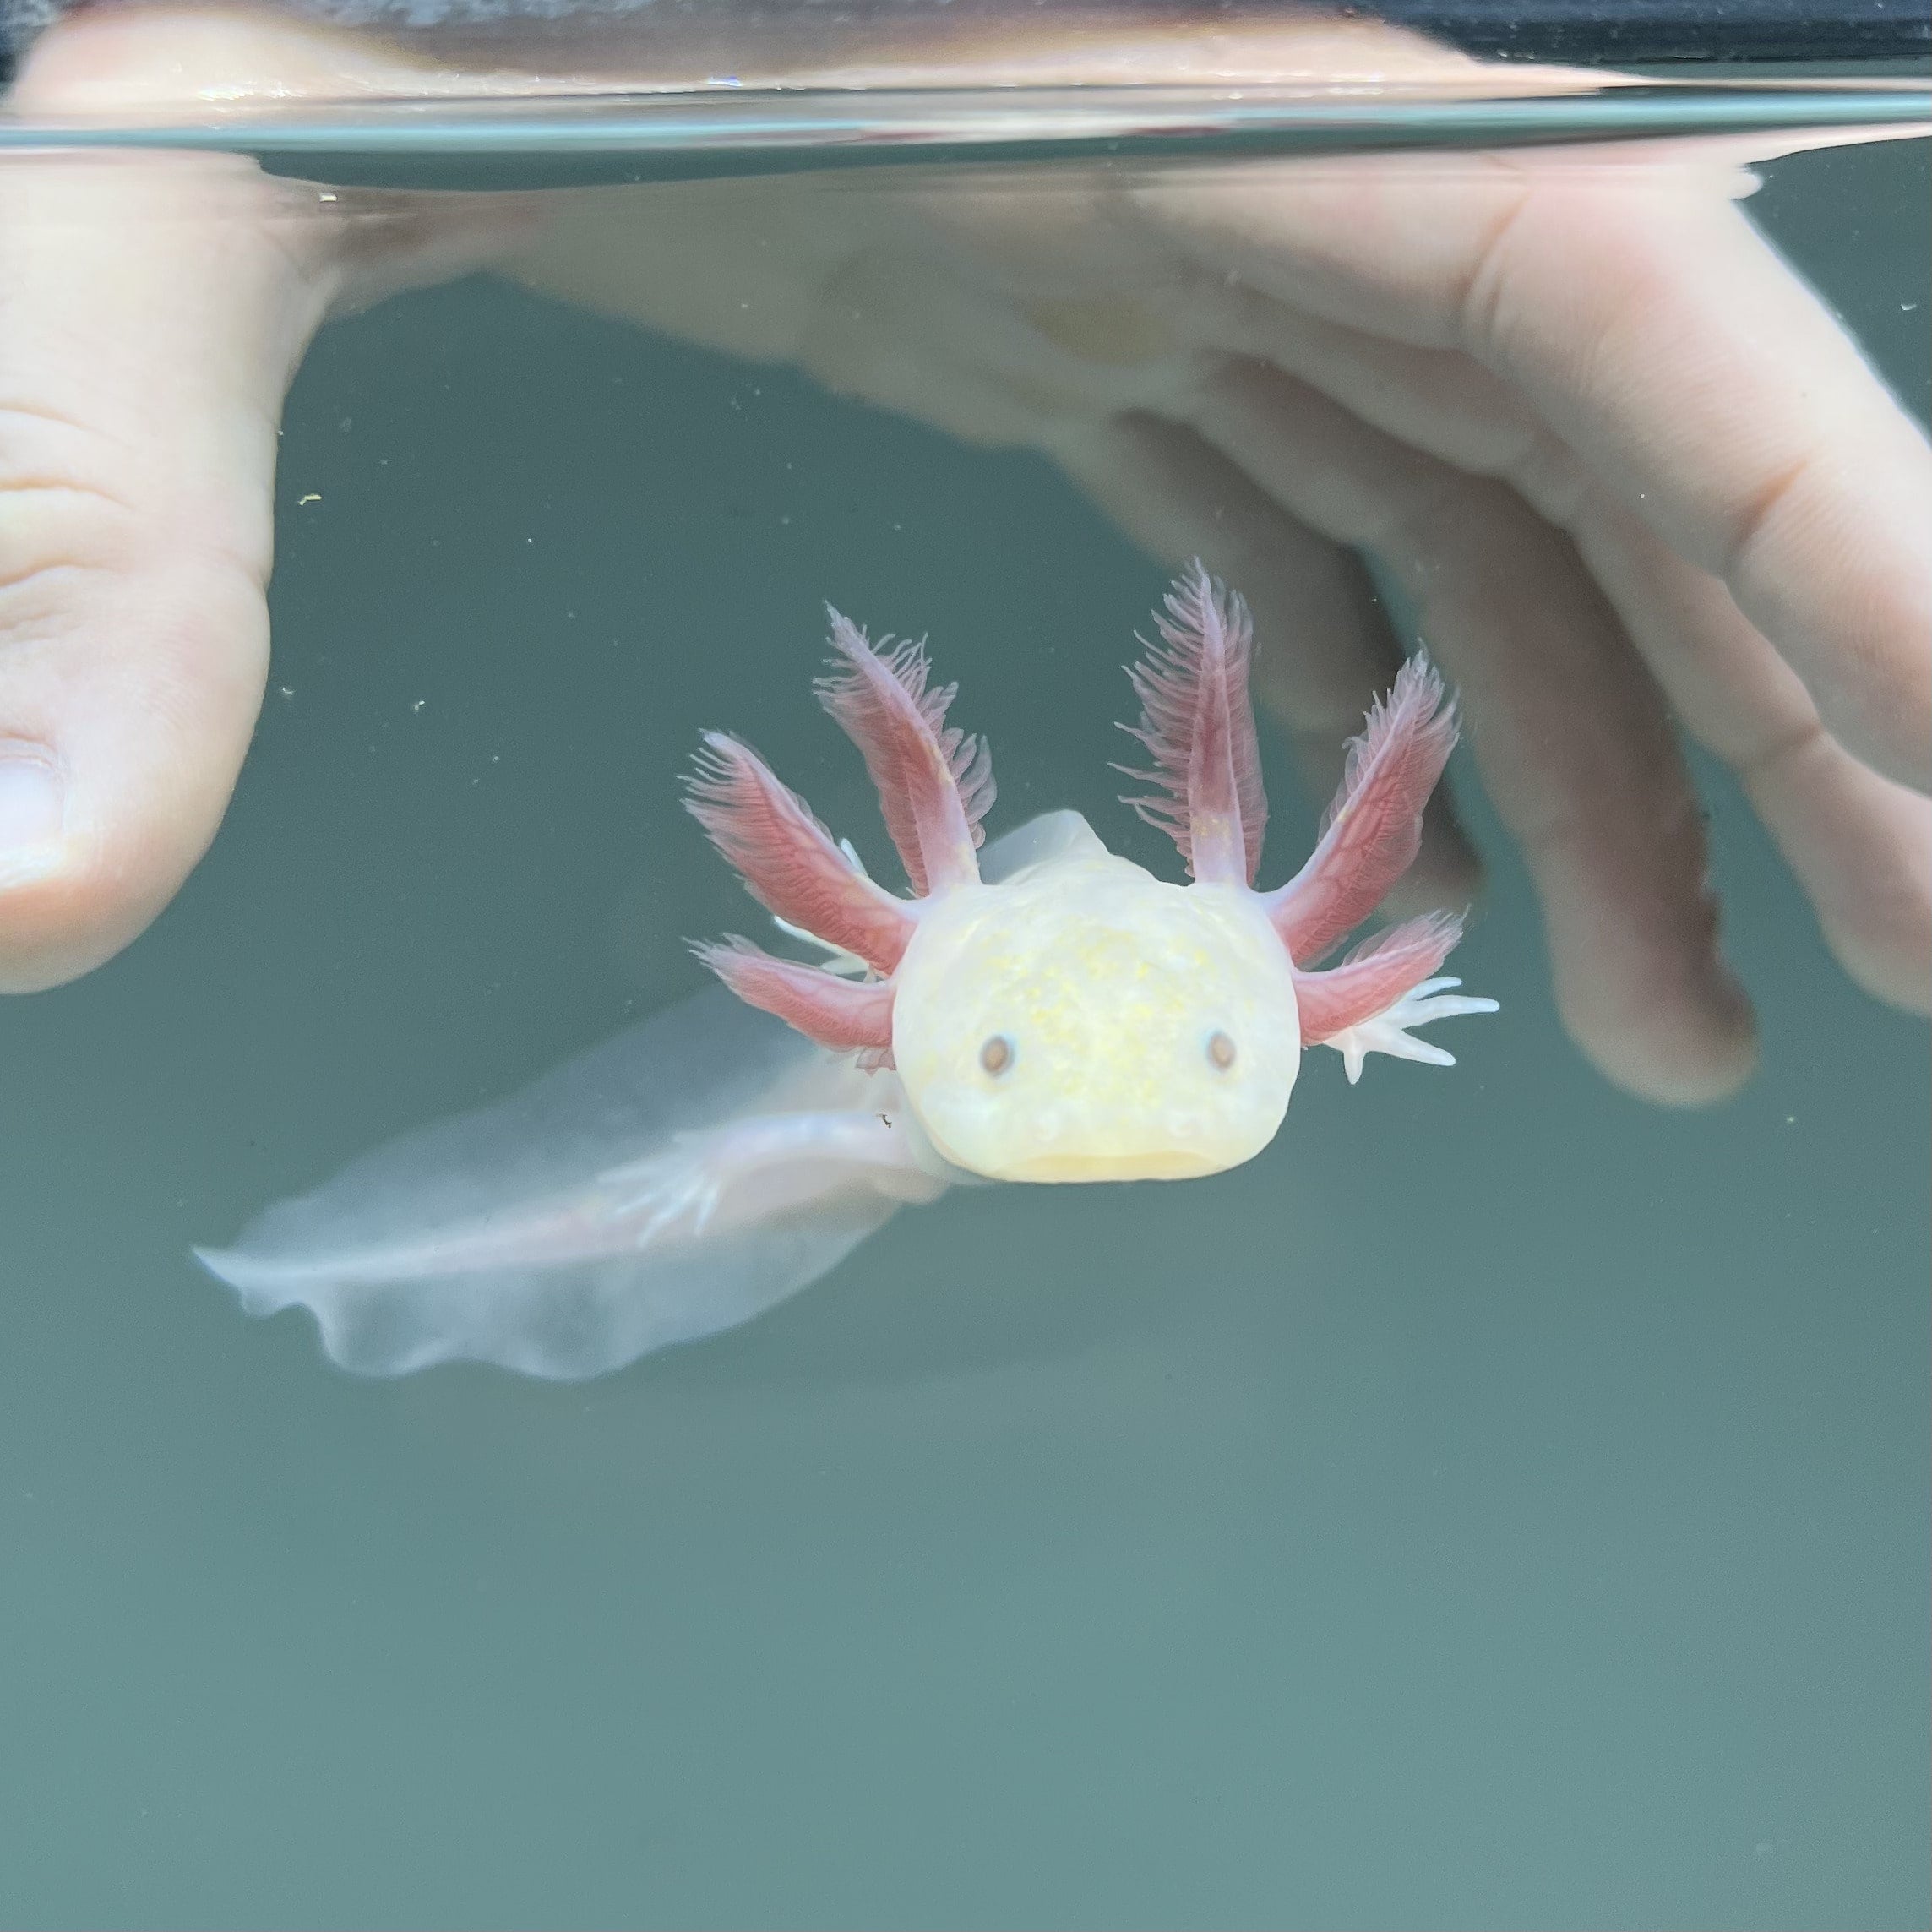 Light Hypomelanistic Melanoid Axolotl